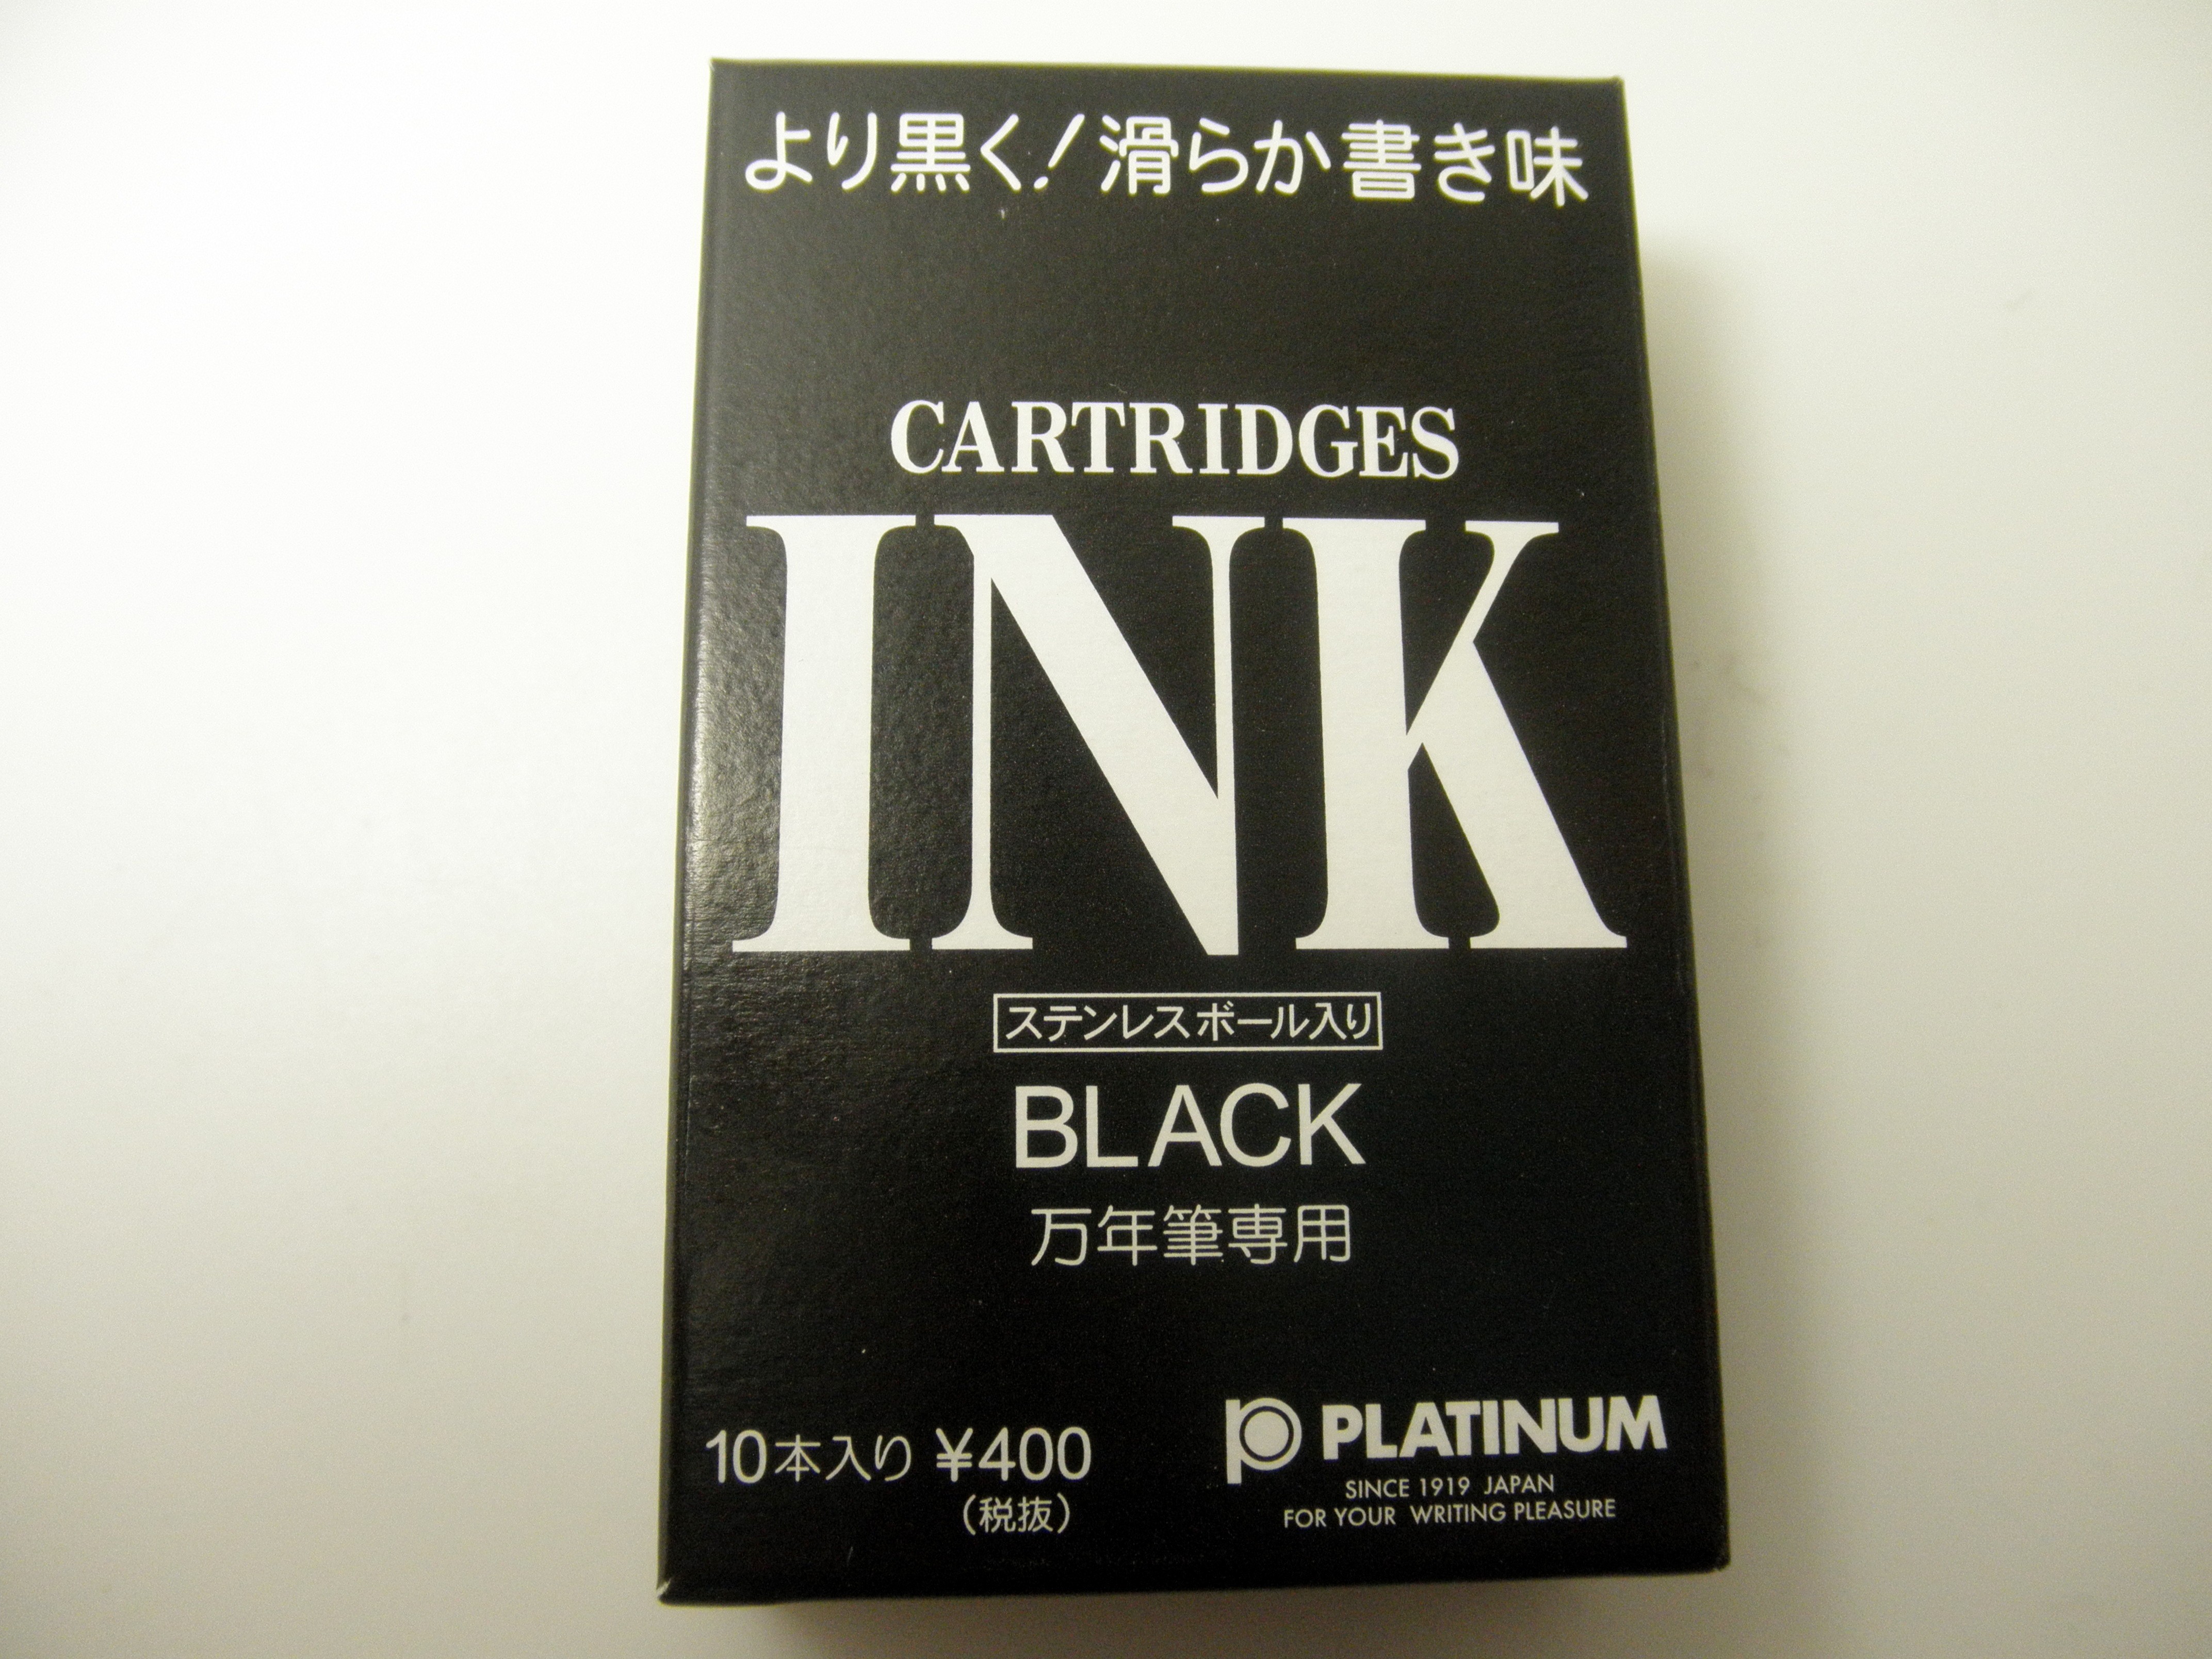 Platinum Black Ink cartridges